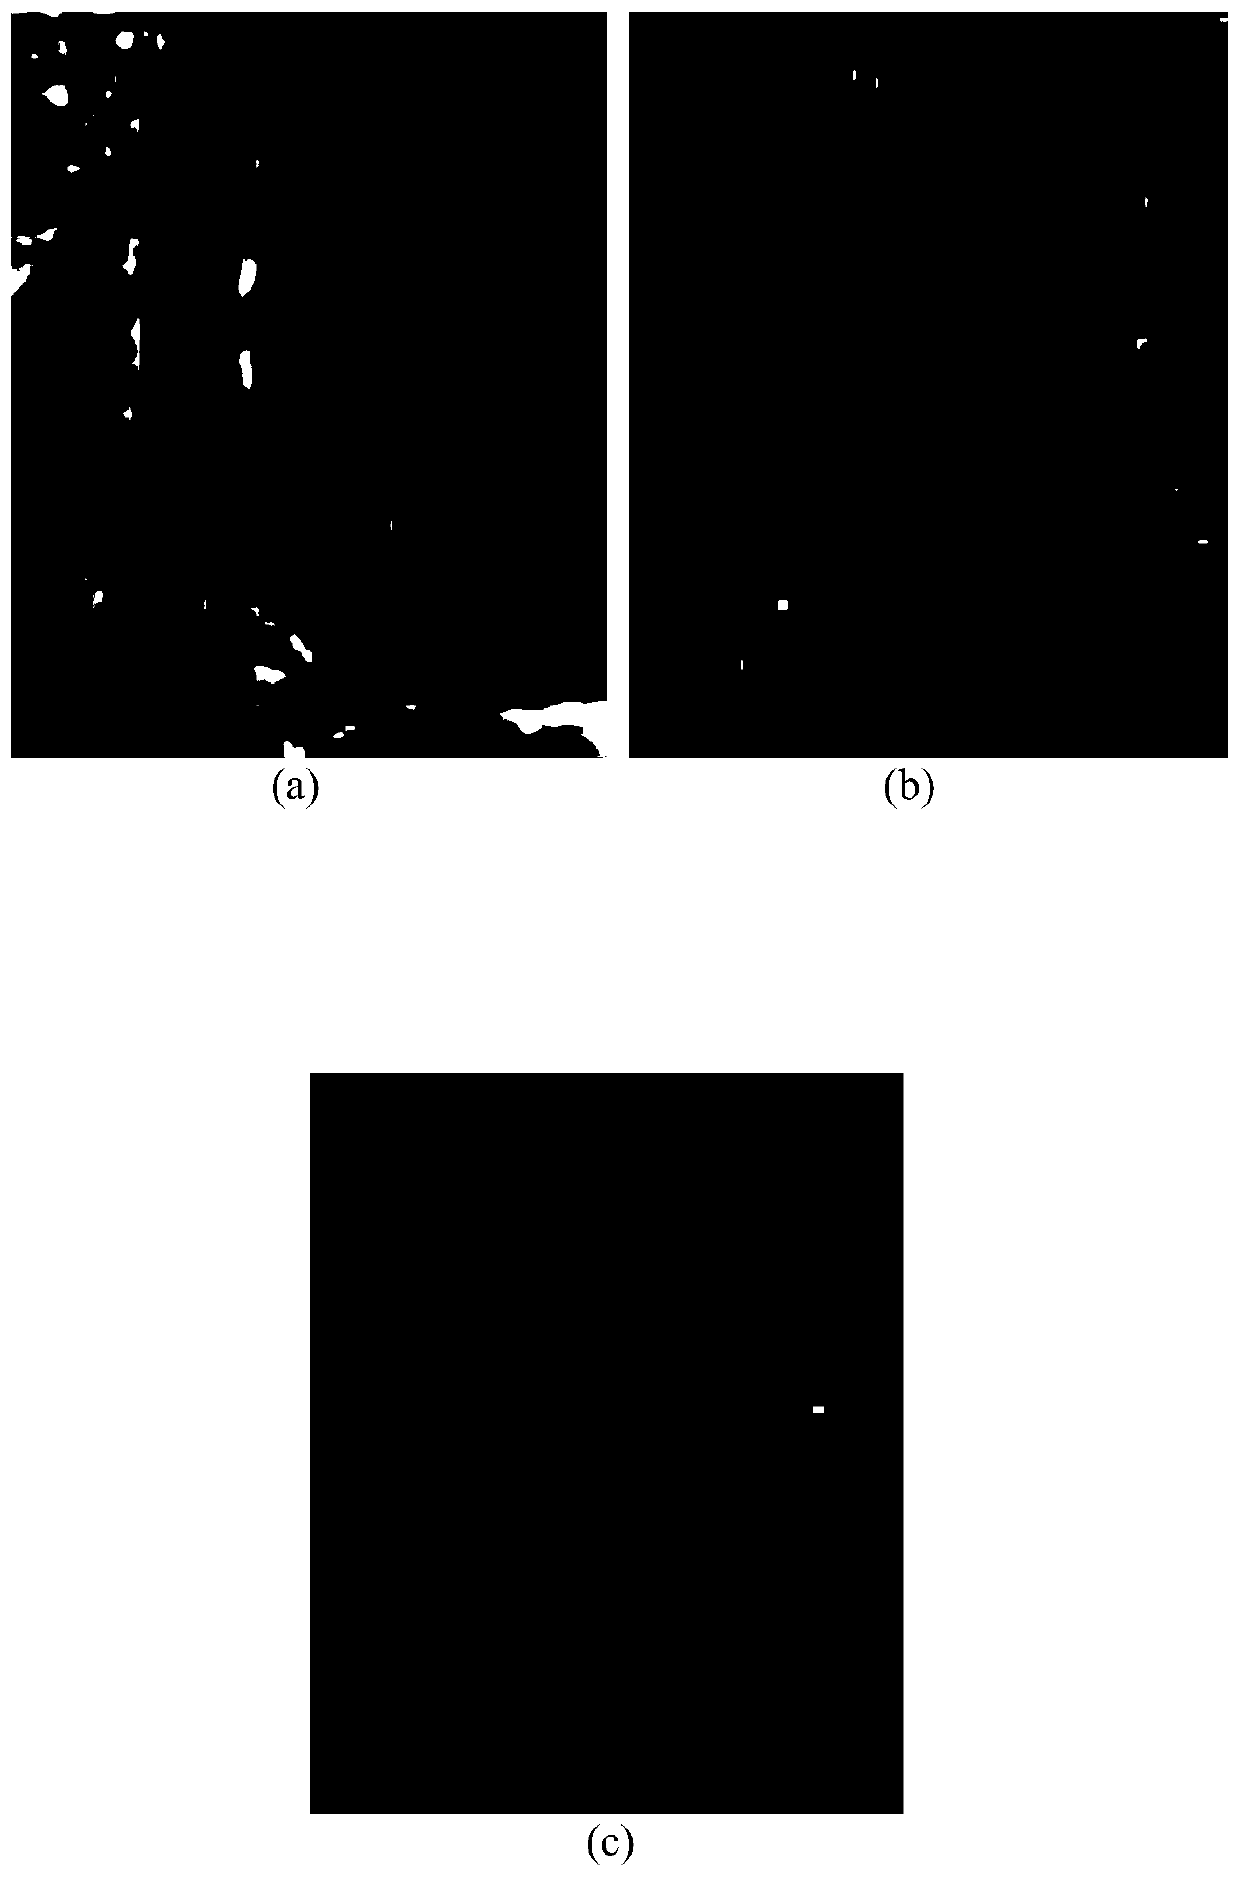 Hyperspectral image target detection method based on variational self-coding network